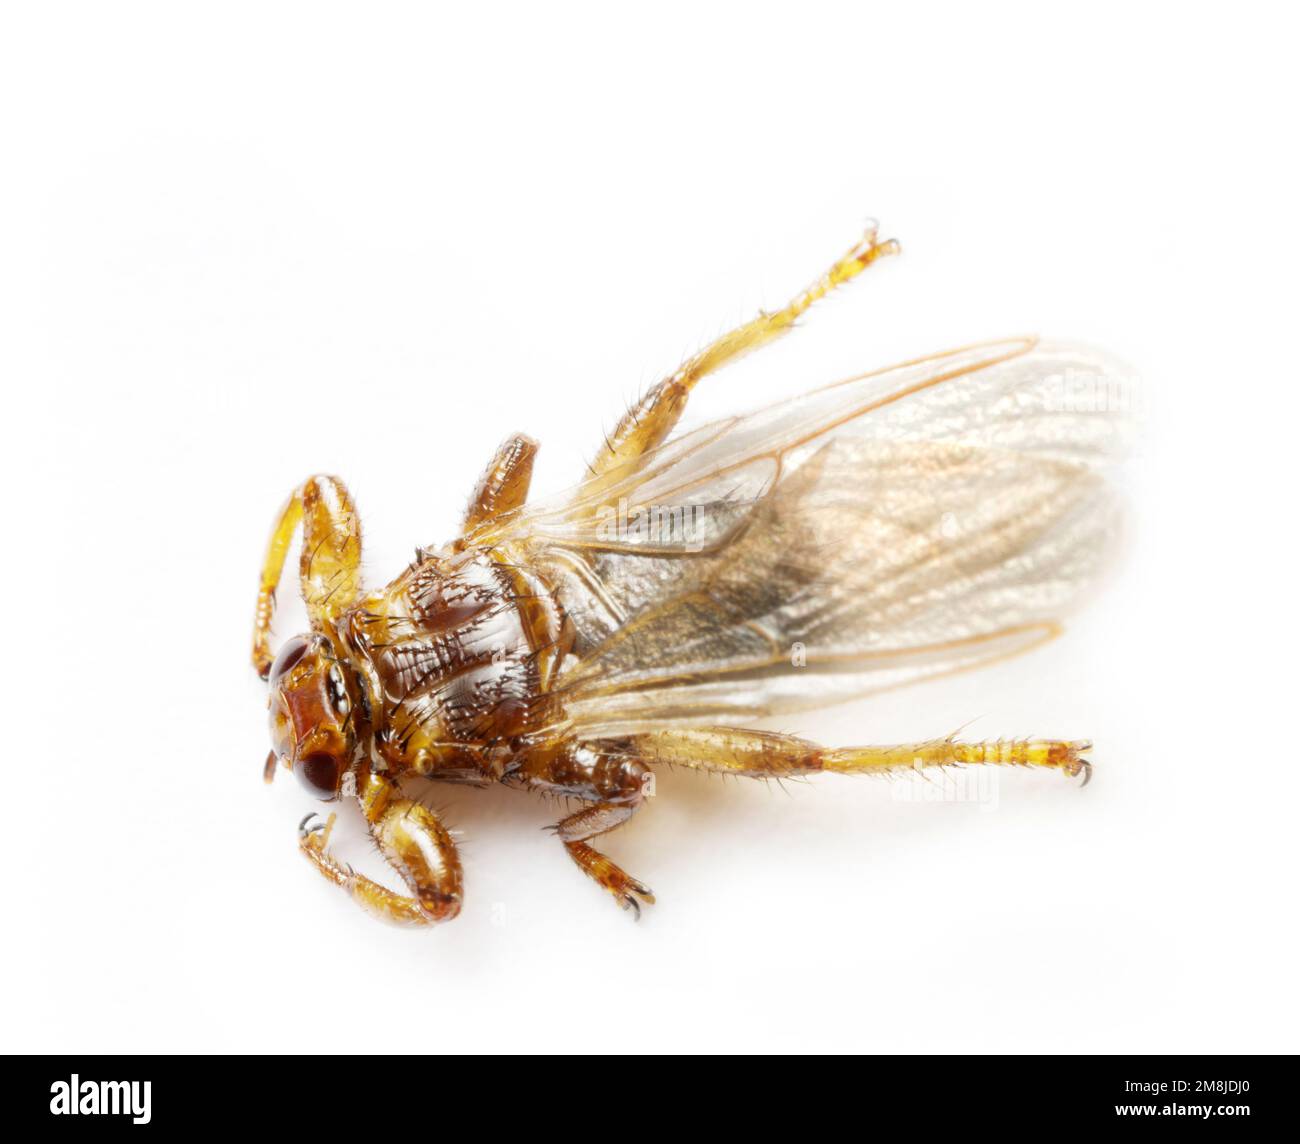 La mosca dei cervi (Lipoptena cervi) obbliga gli ectoparasiti degli artiodattili (alci, cervi, cinghiali, bestiame cornuto), può attaccare l'uomo e nutrirsi del suo sangue, Foto Stock